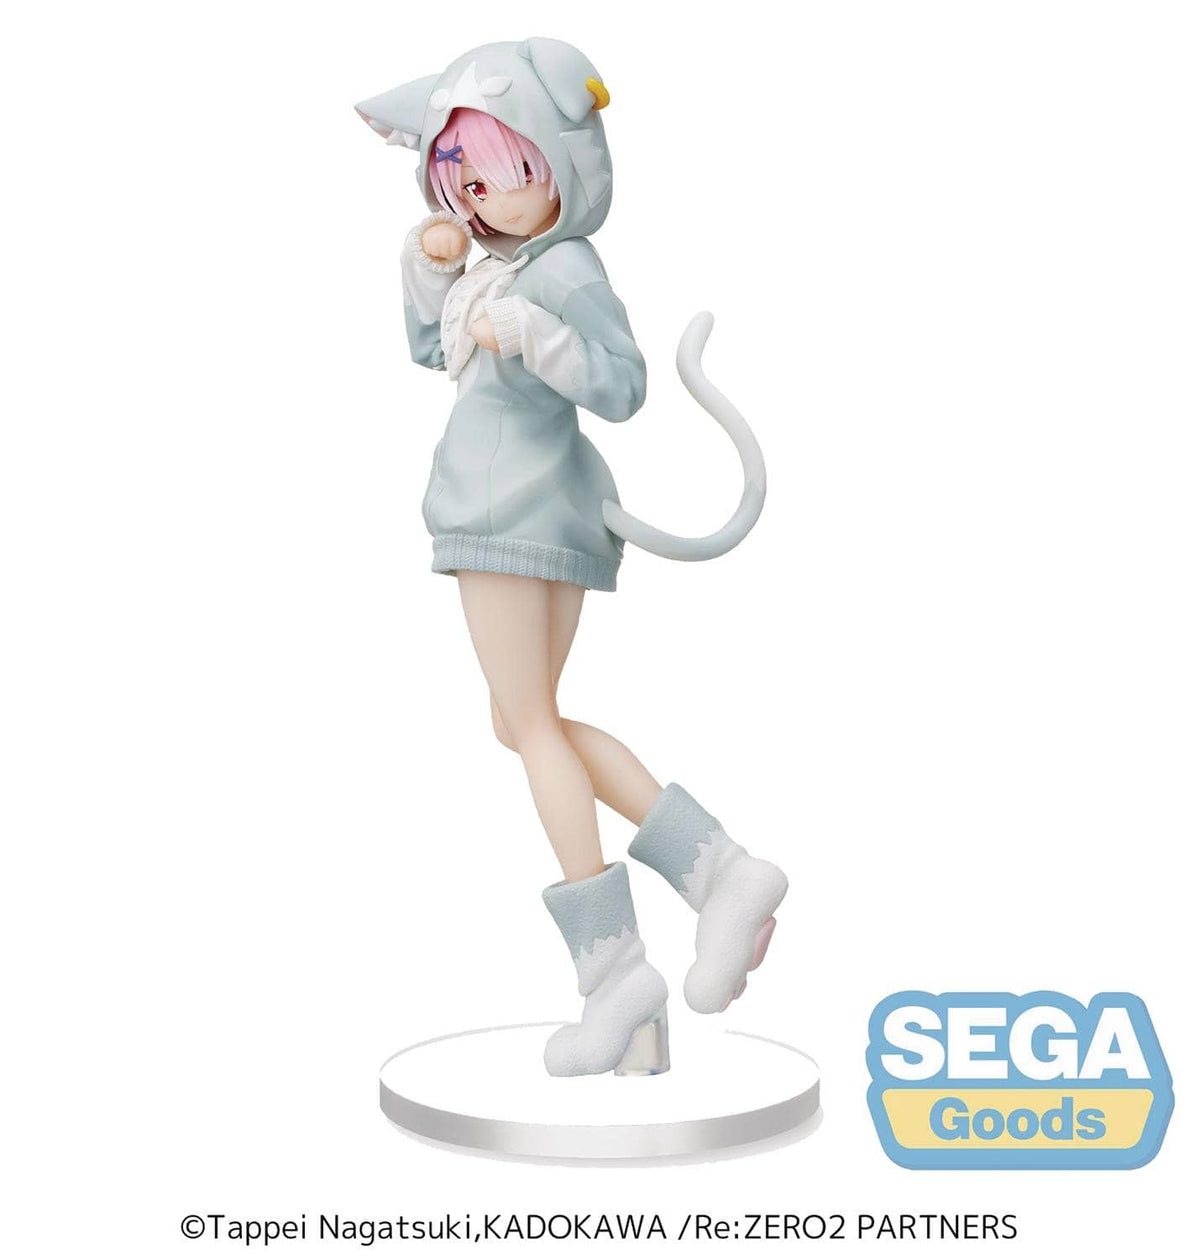 Sega Super Premium: Re;Zero - Ram